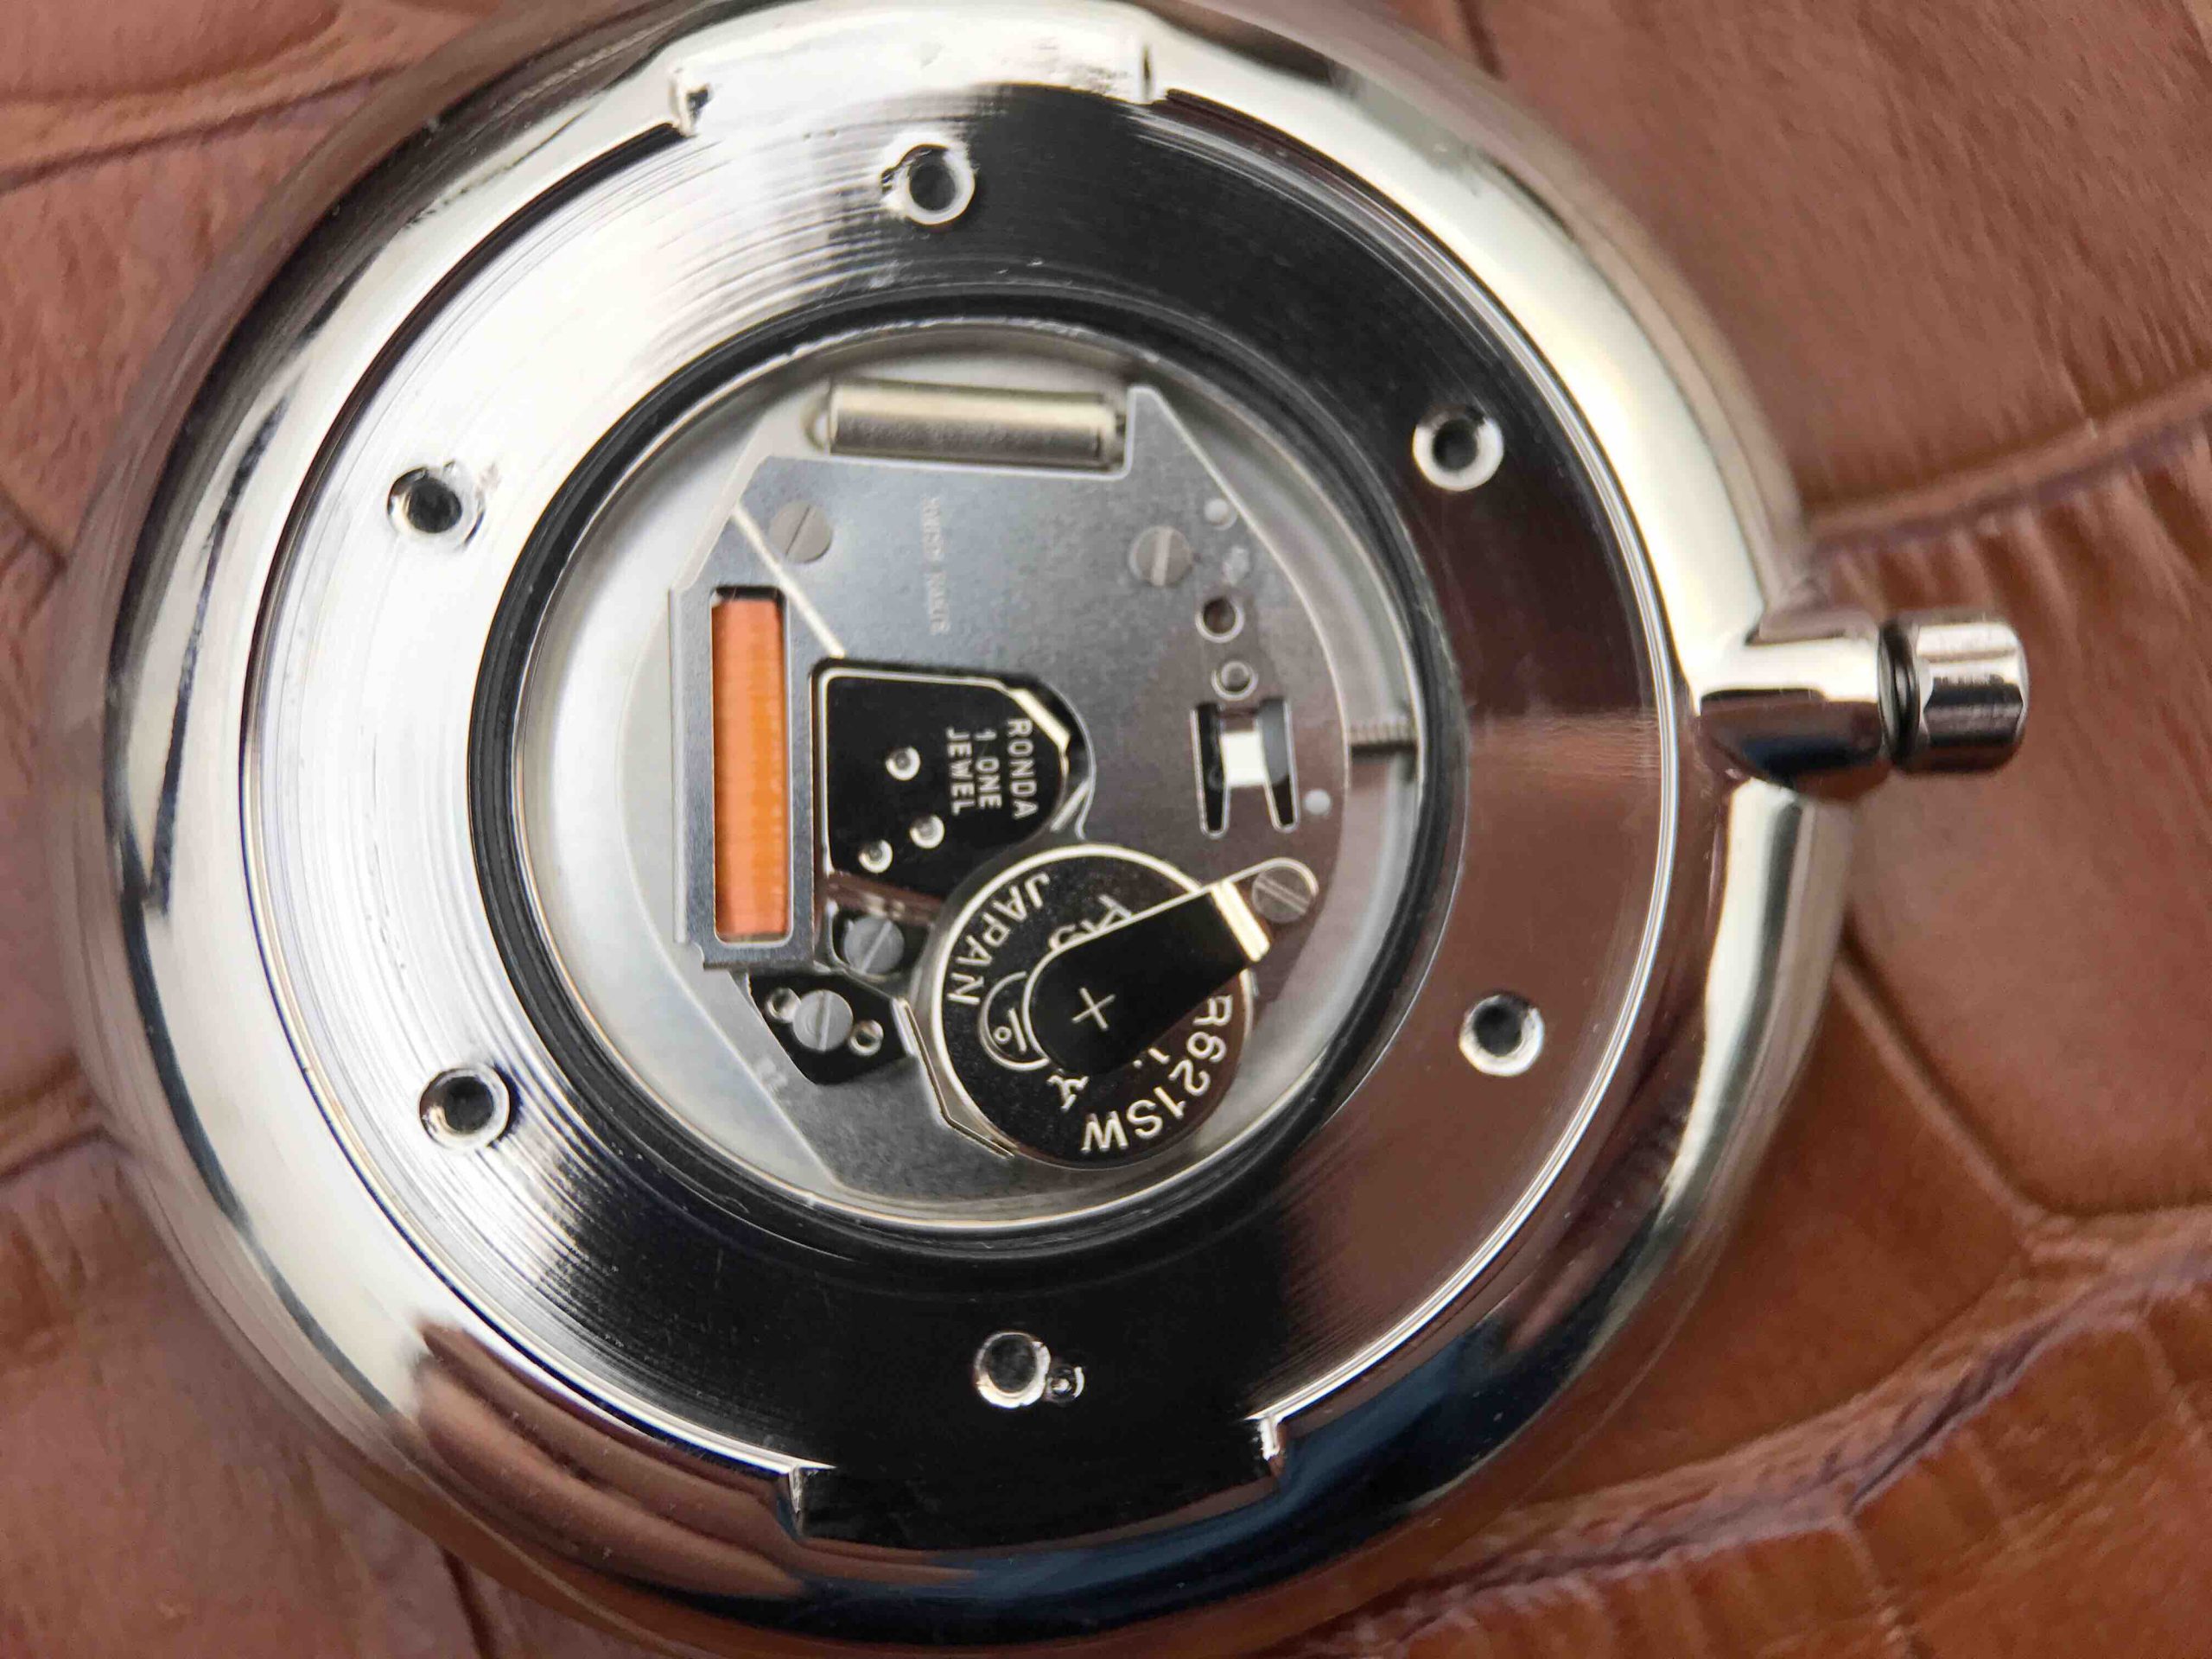 202301261435015 scaled - 復刻手錶的浪琴嘉嵐價格 JF廠浪琴嘉嵐繫列L4.755.4.58.6 石英男士腕錶￥2080